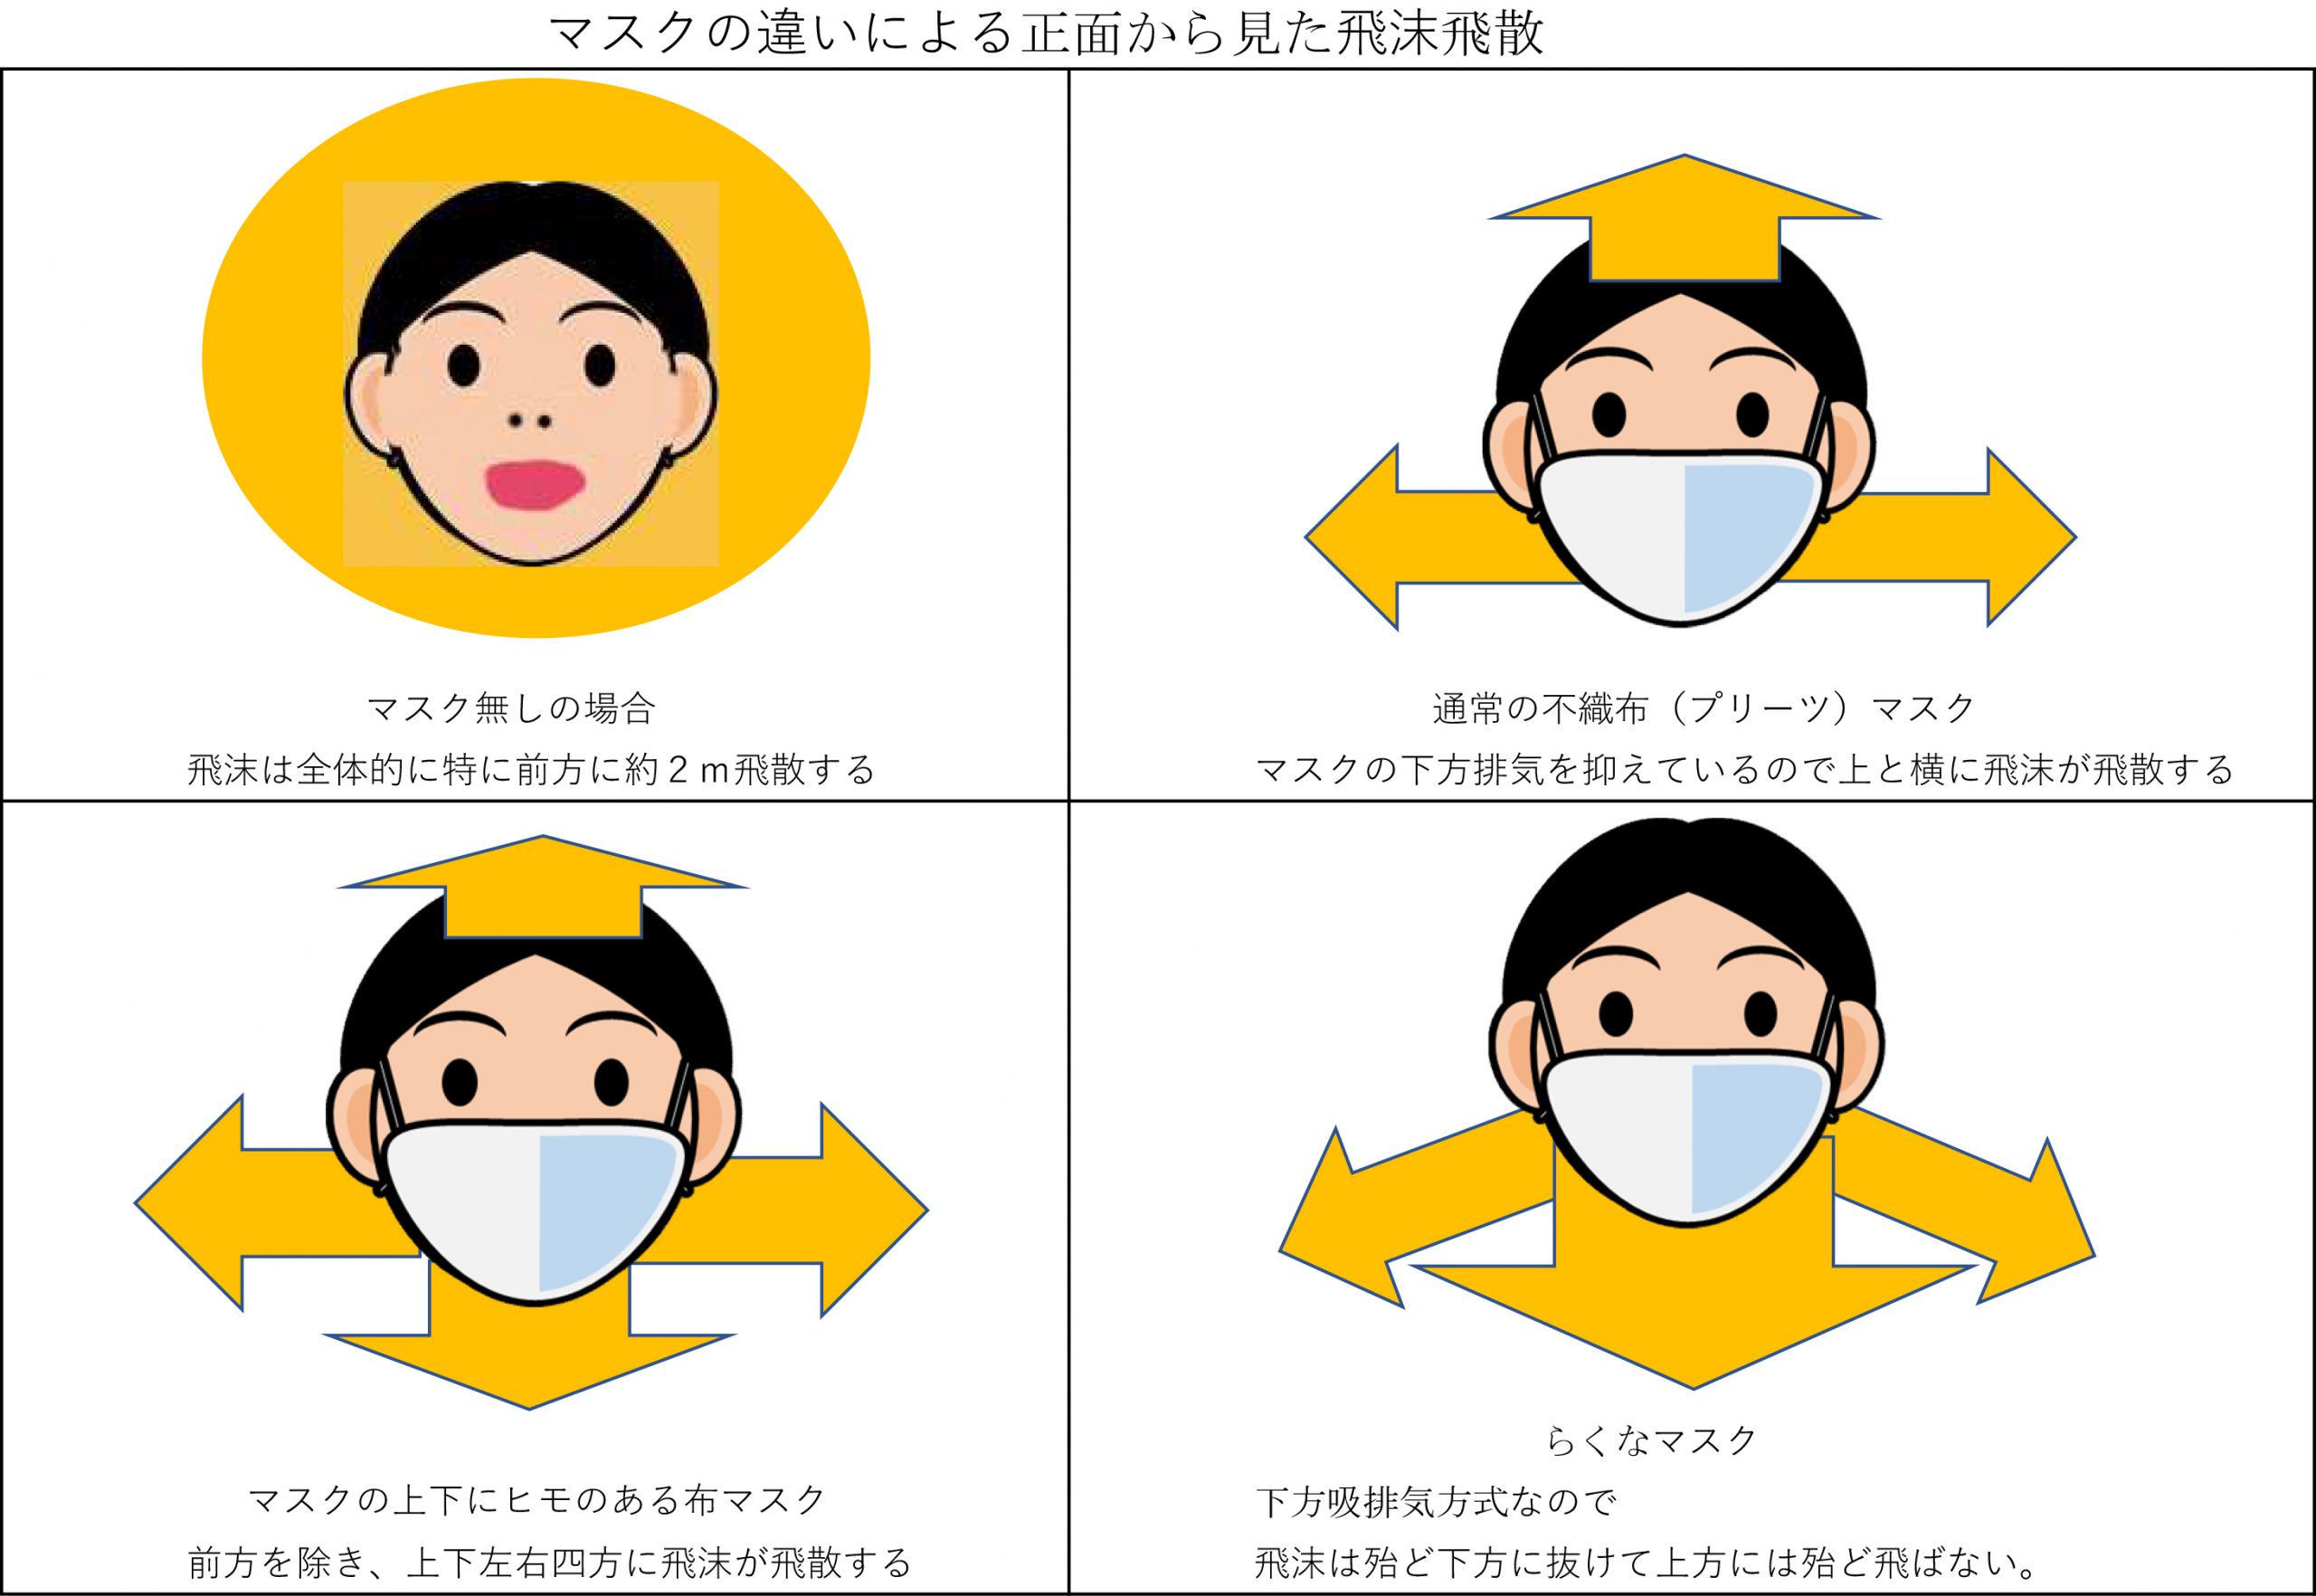 ウレタンマスクはng 広まる 不織布マスク 推奨の動き を検証した らくなマスクブログ